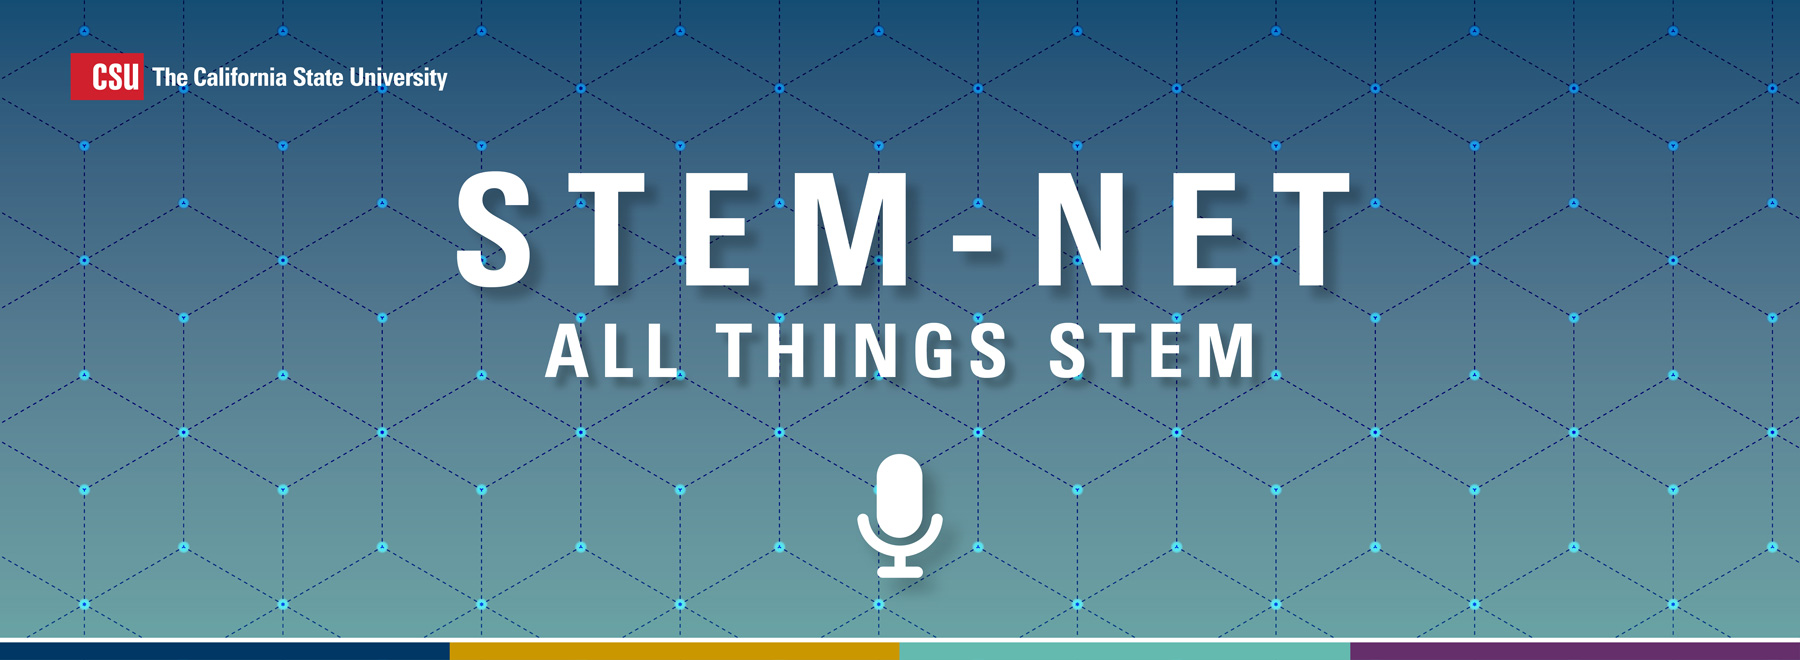 STEM-NET All Things STEM